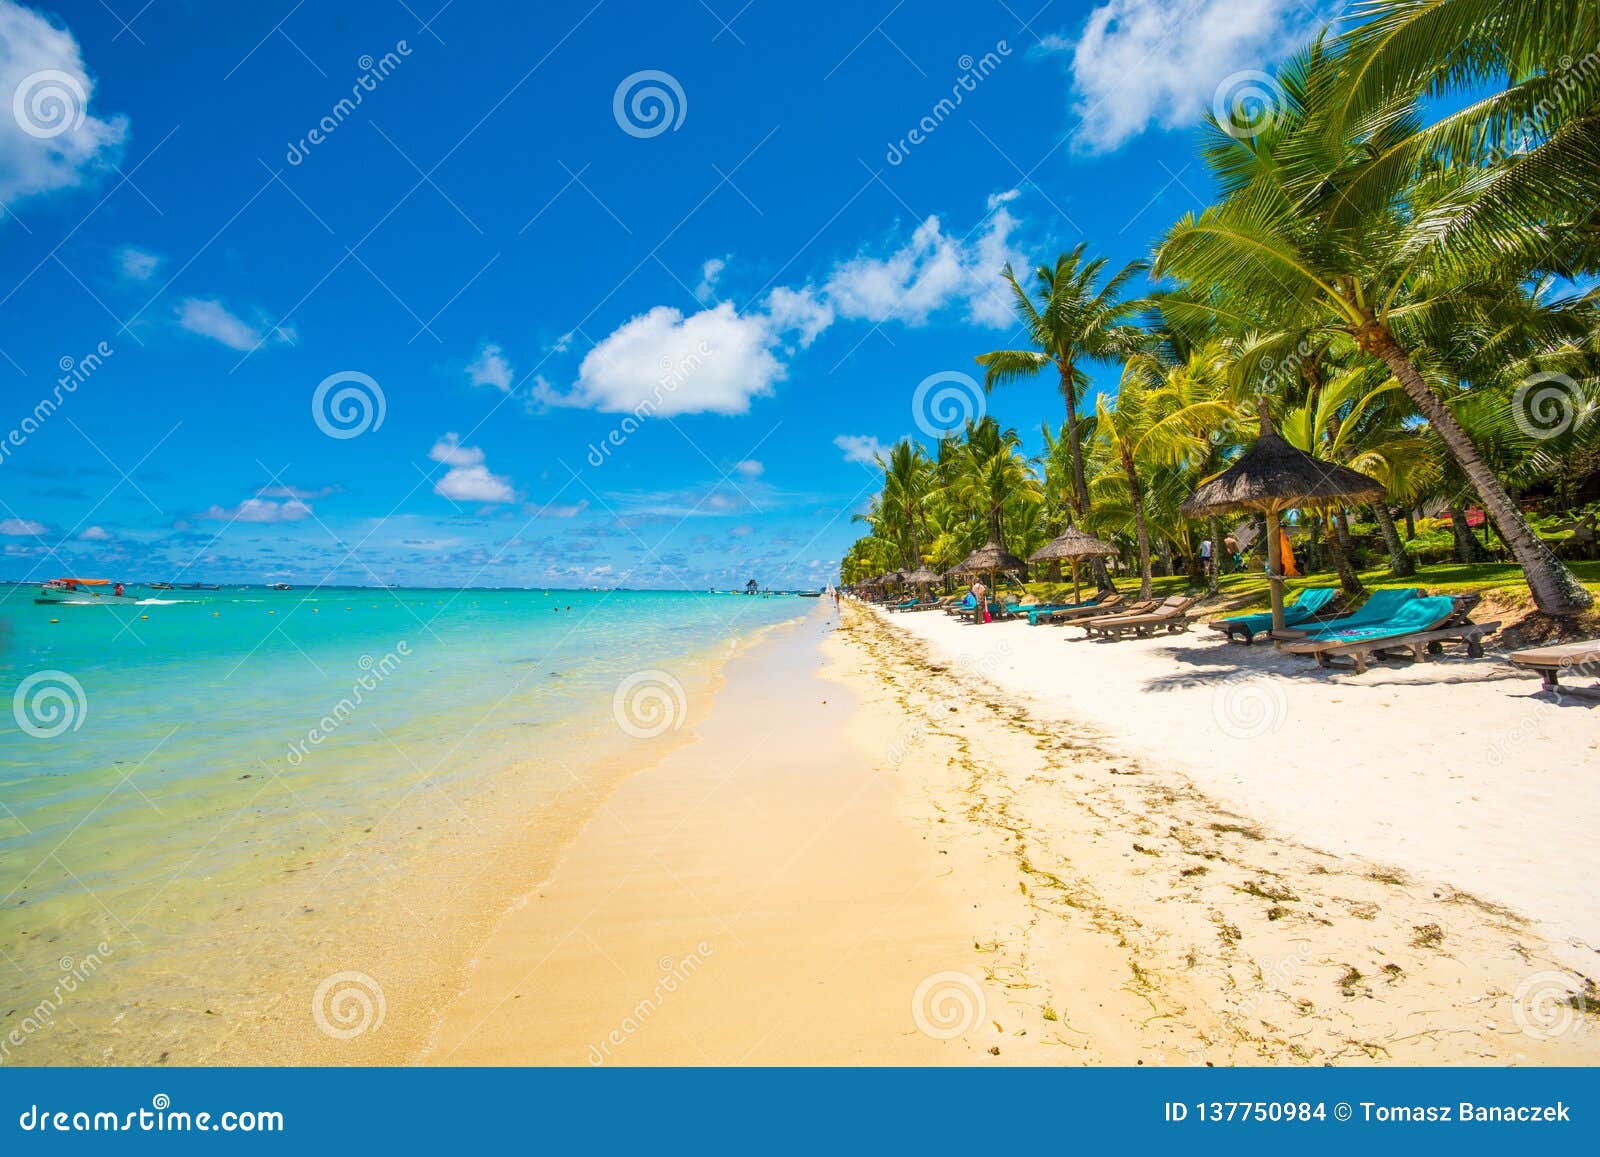 beautiful exotic beach in trou aux biches, mauritius